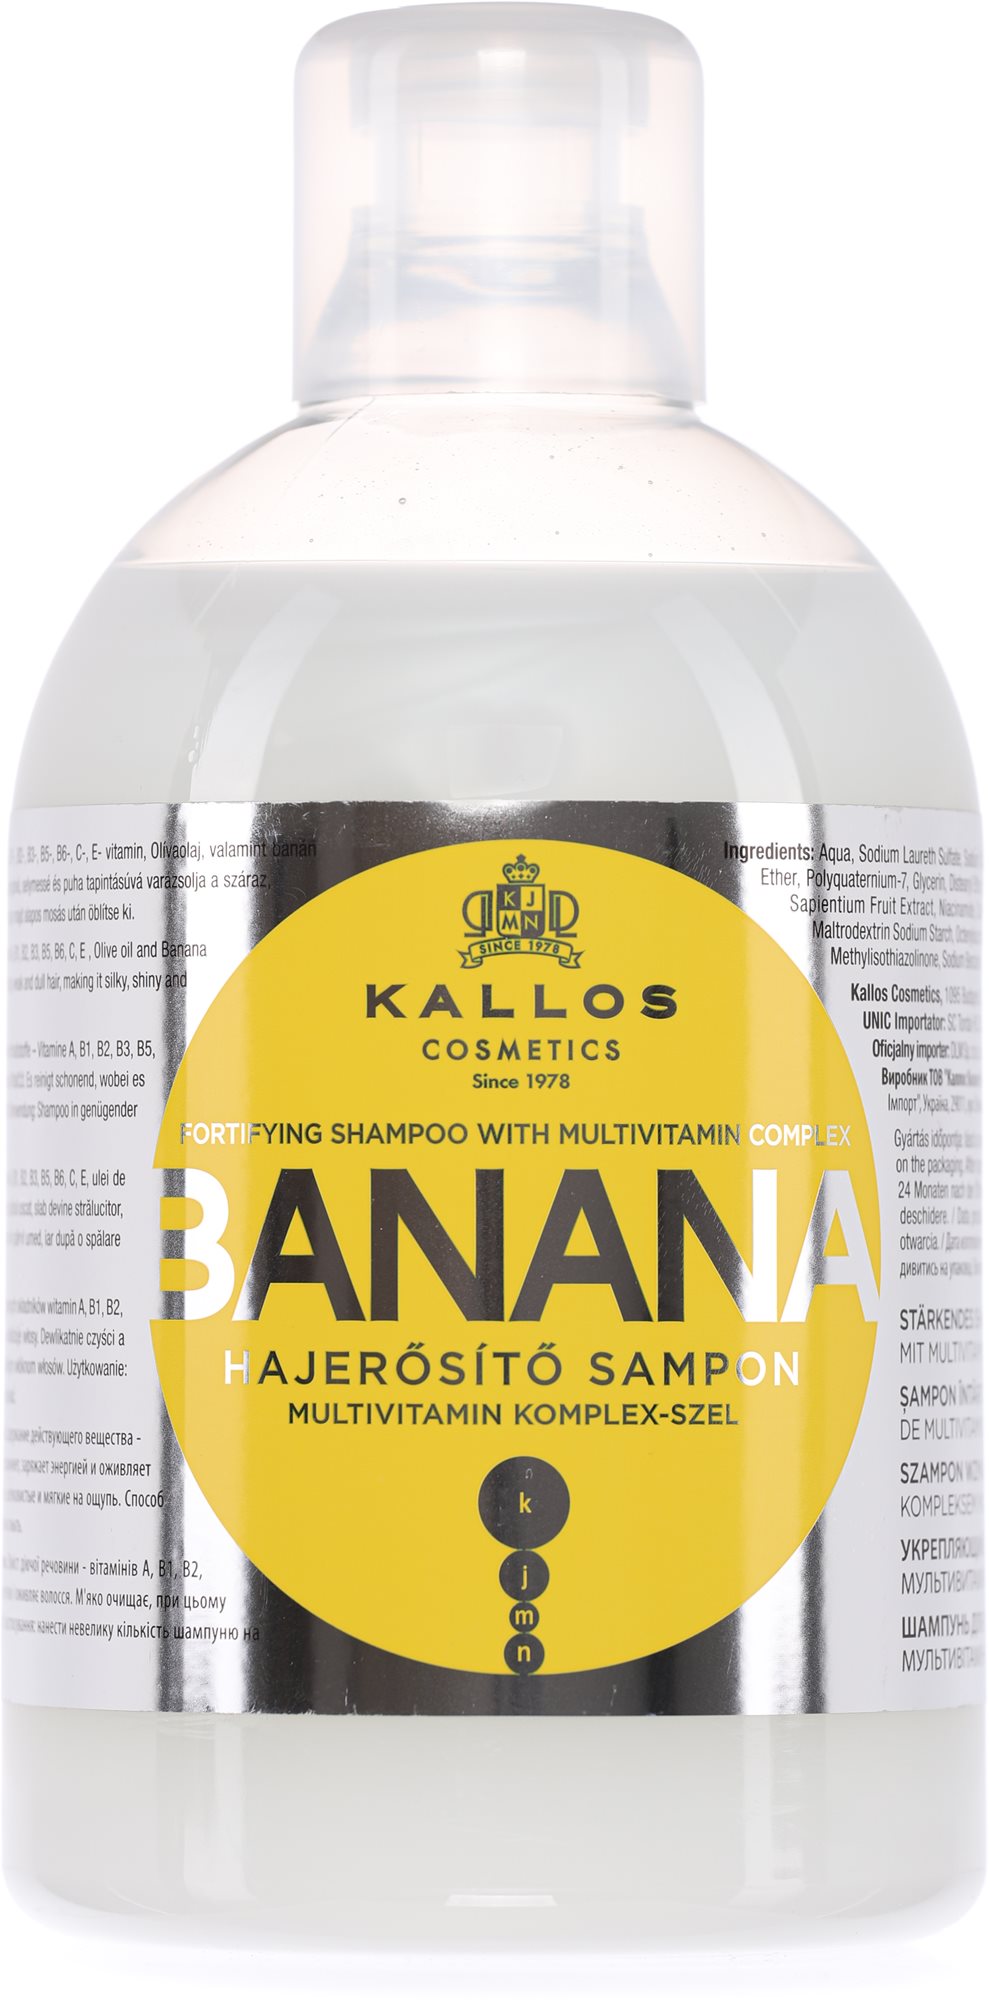 KALLOS banán hajerősítő sampon 1000 ml